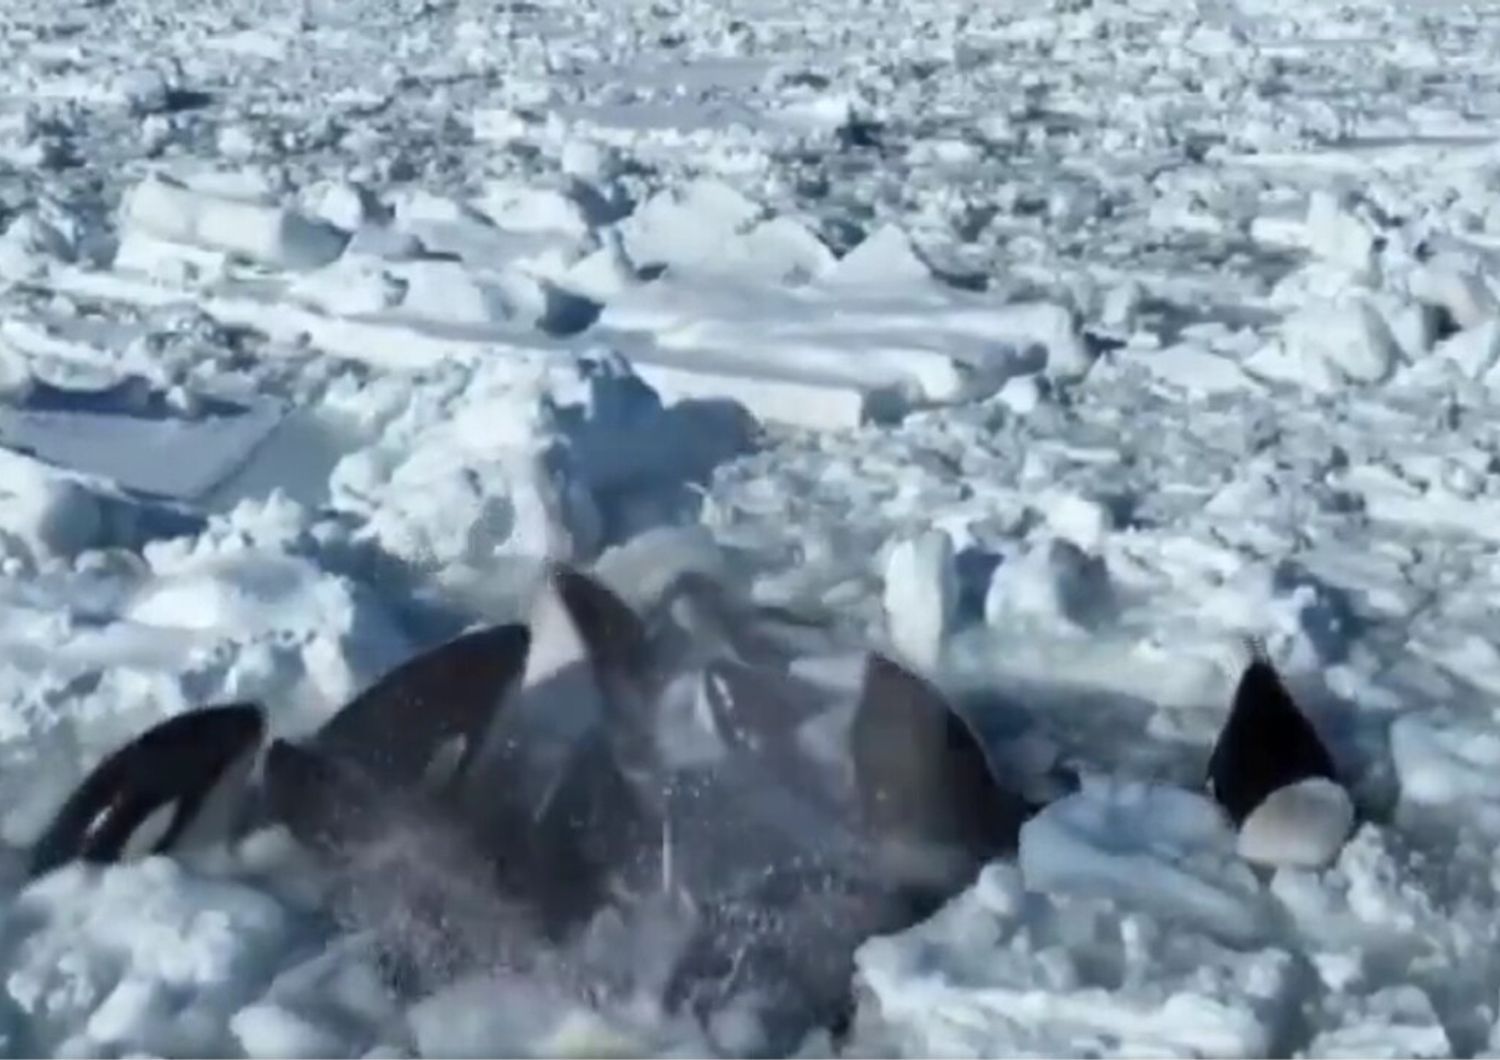 Branco di orche intrappolate nel ghiaccio